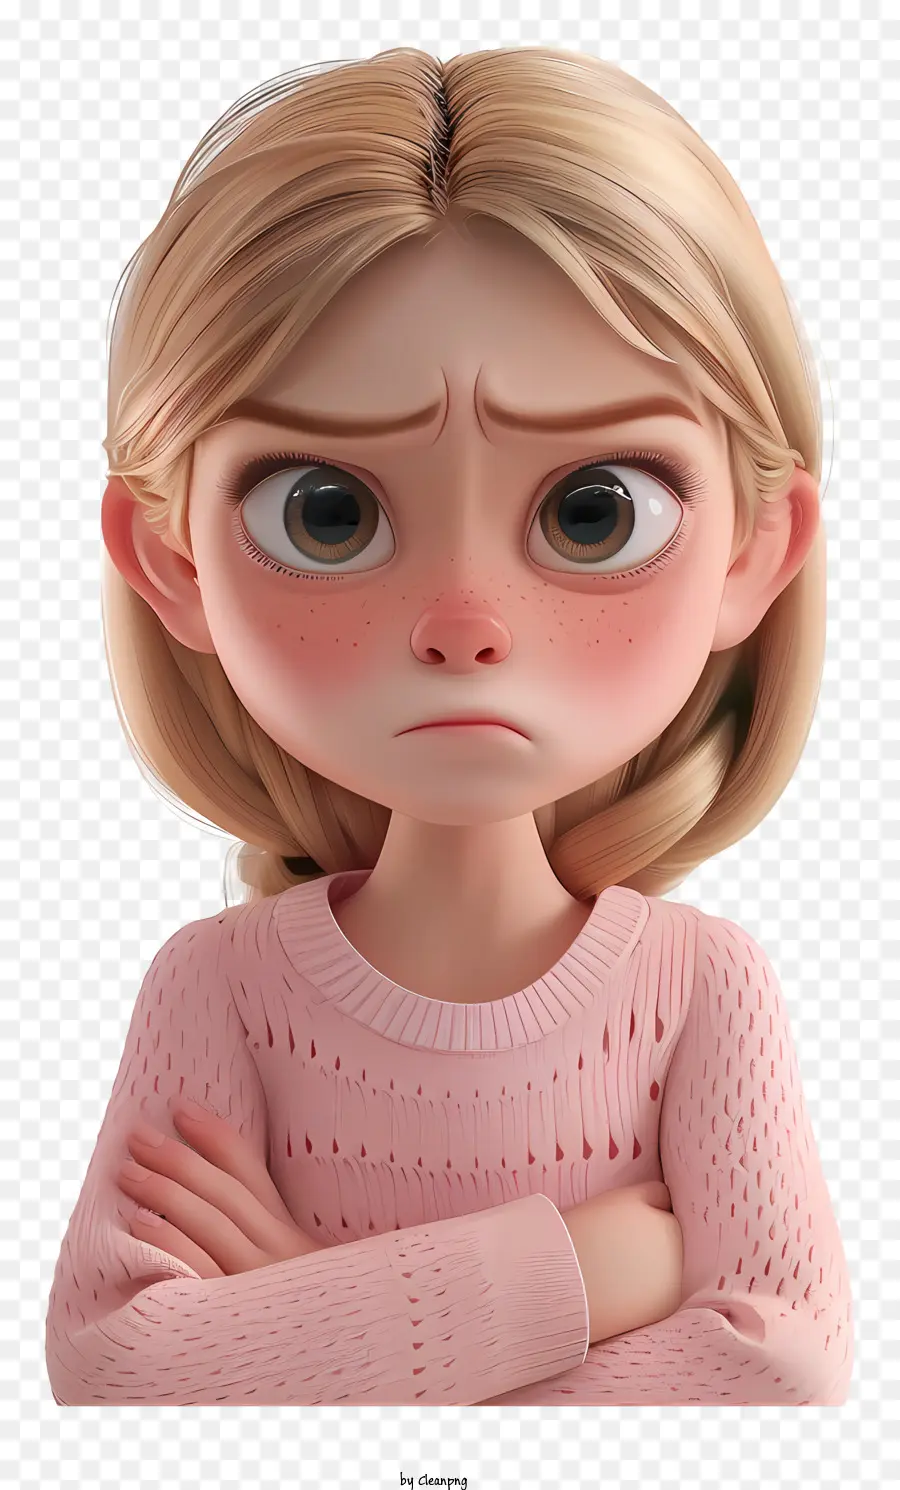 Sentirsi triste donna bionda maglione rosa triste - Donna triste con capelli biondi in maglione rosa